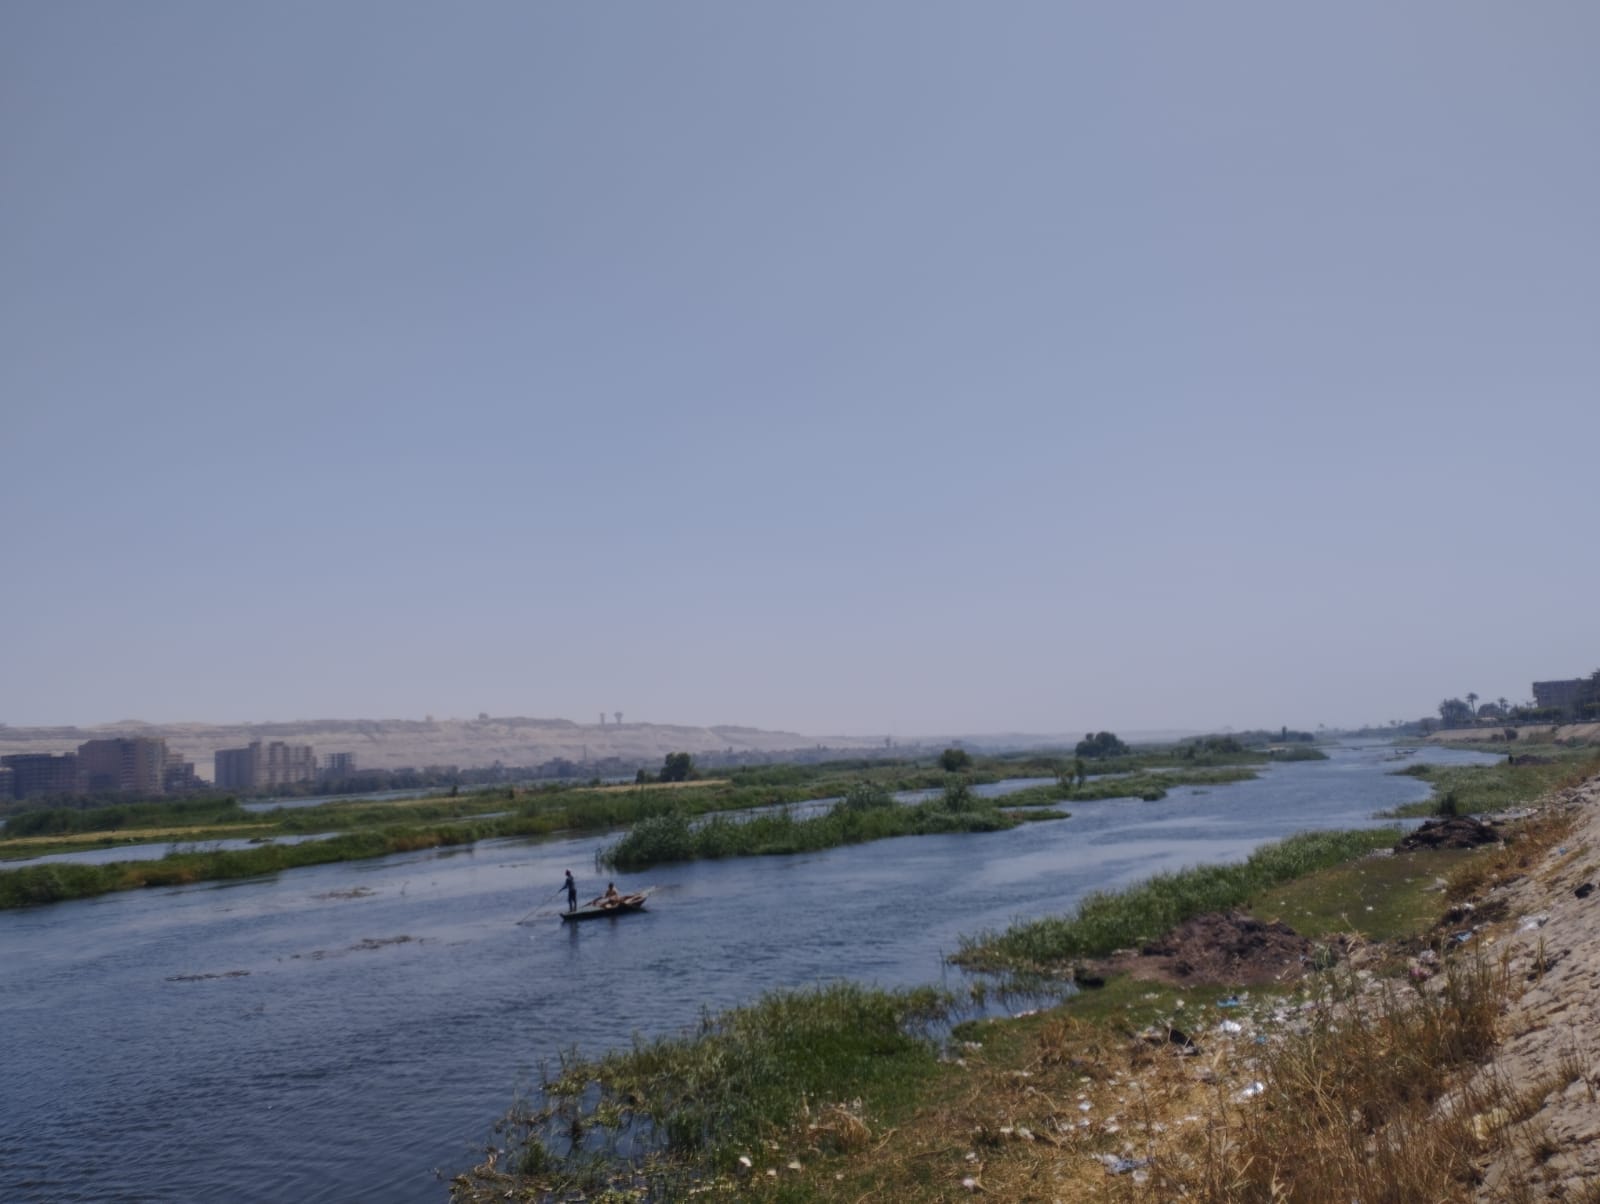  الصيادون ينطلقون بمراكب الصيد فى عرض النيل (5)